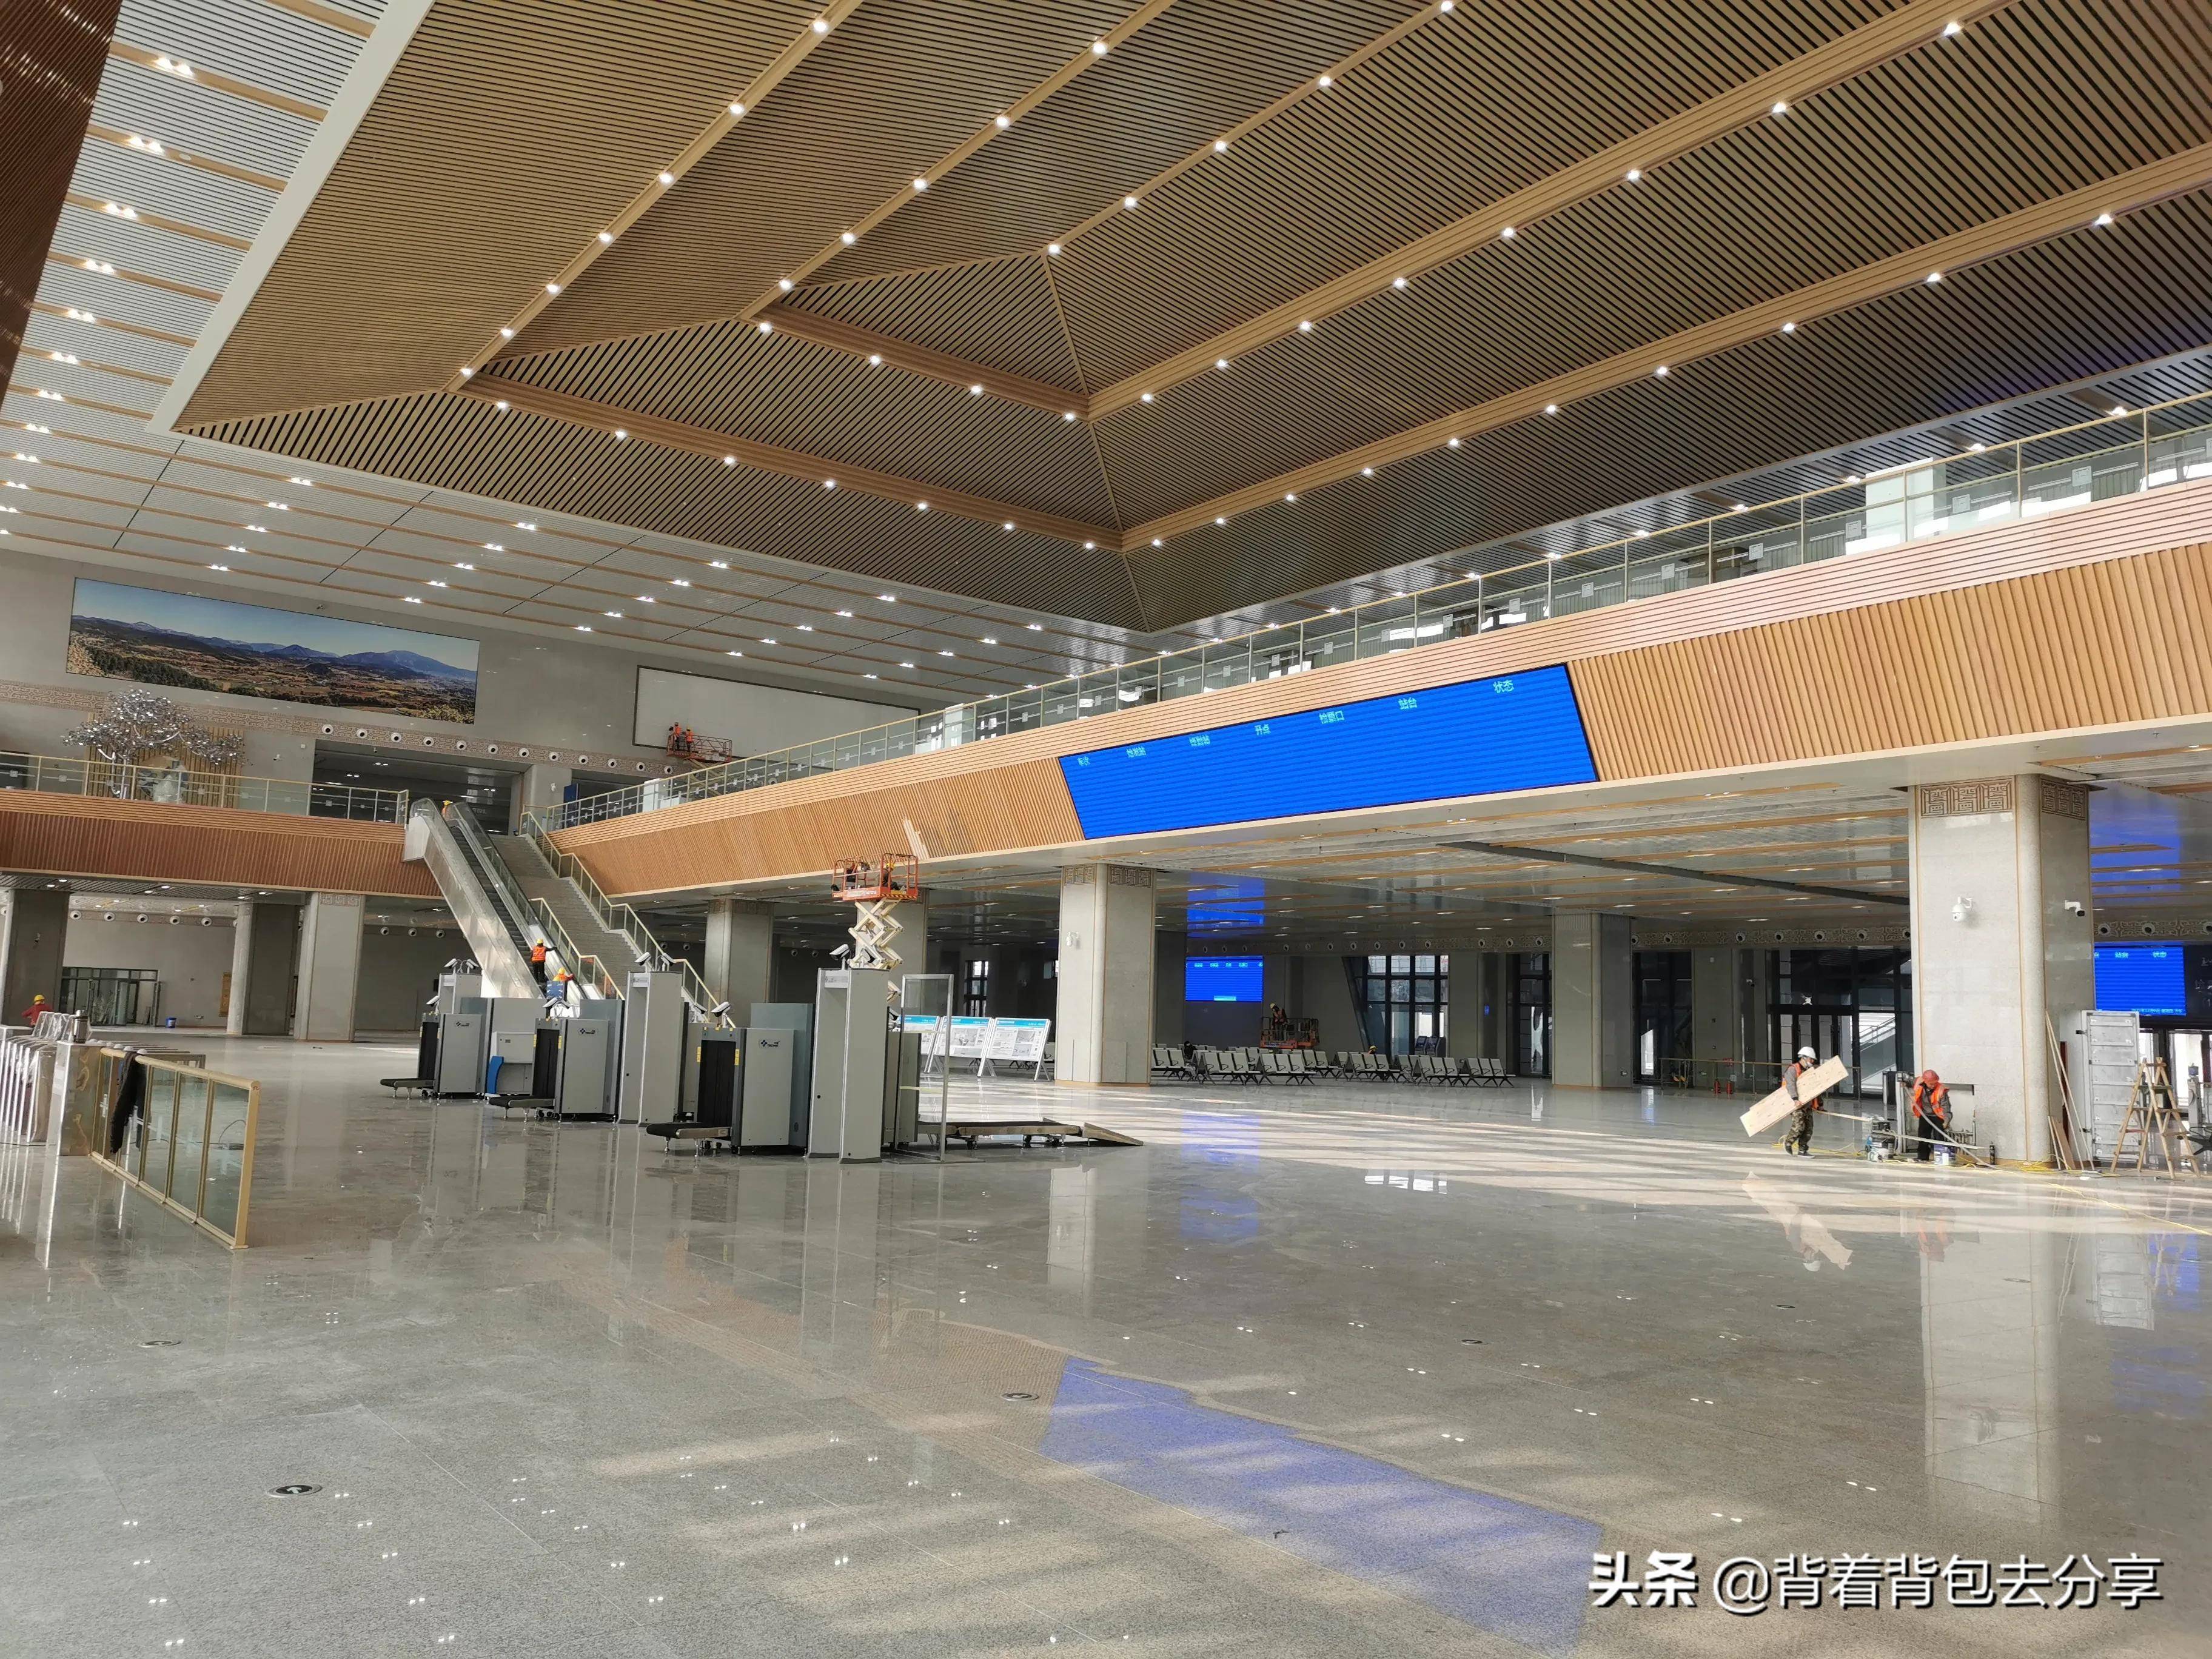 鲁南高铁沿线中,济宁段最大的高铁站台,月底即将通车